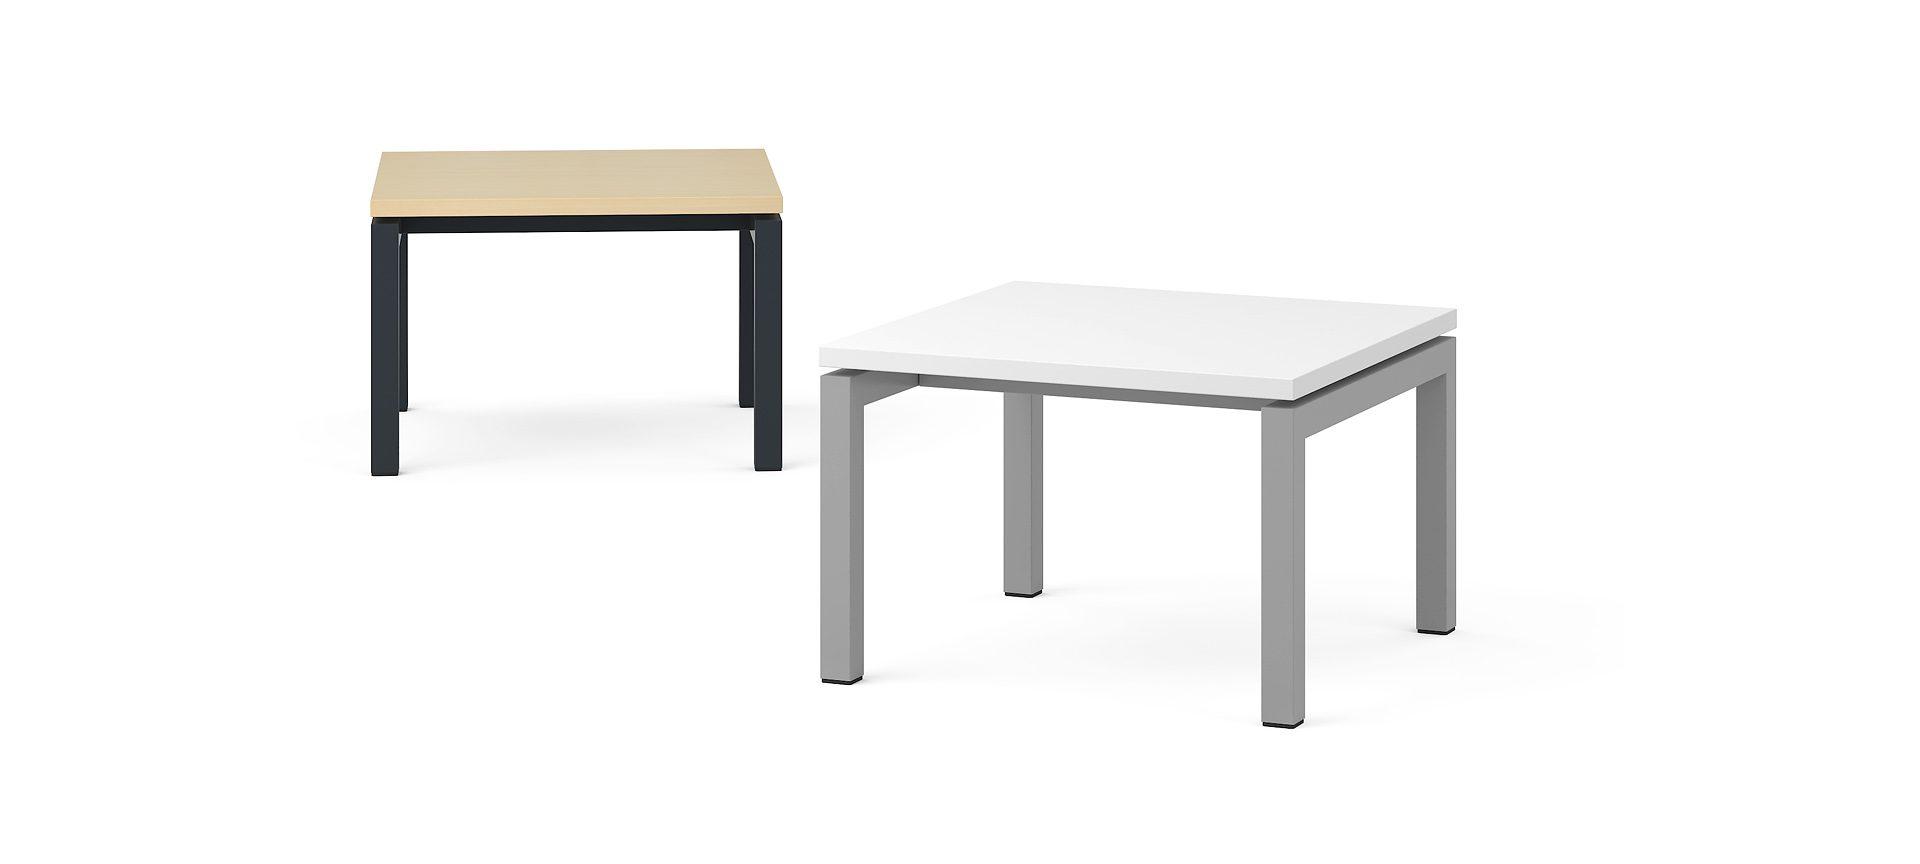 Кофейный столик NOVA, 600x600x400 мм, M1 - Белый меламин, A - Черная